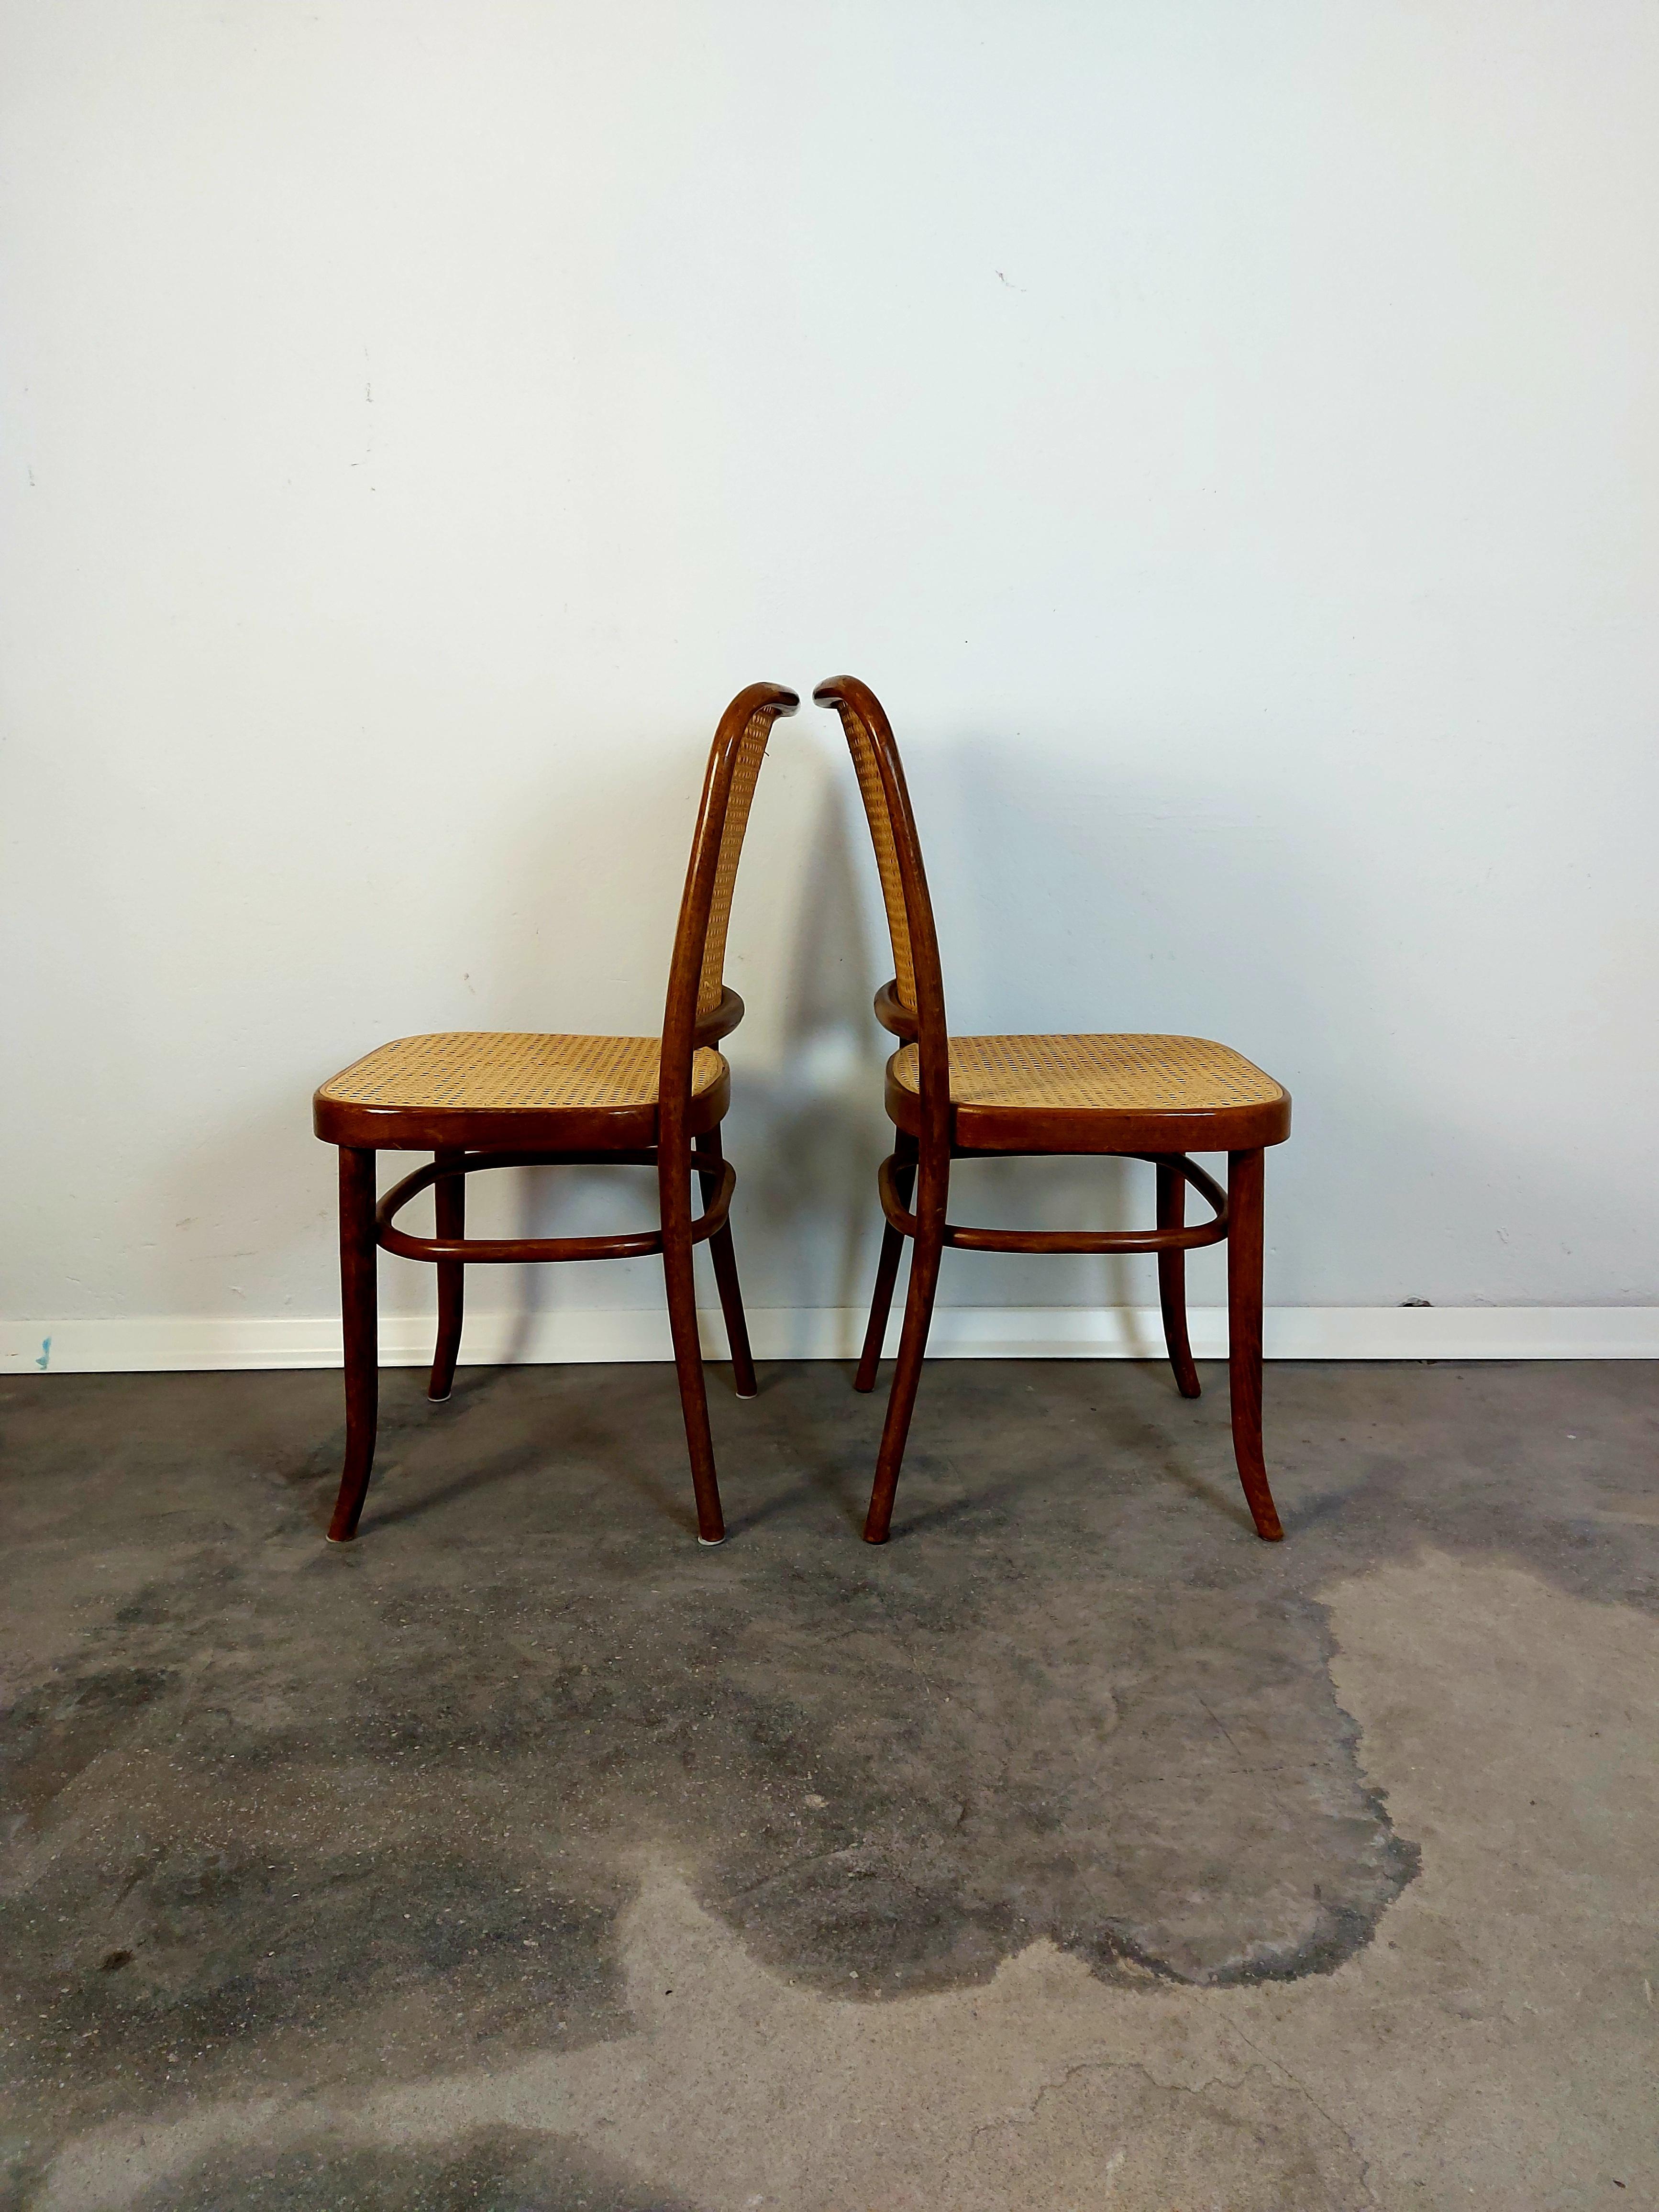 Slovenian Prague Chair, No. 811 Bentwood Chair, 1970s, 1 of 2